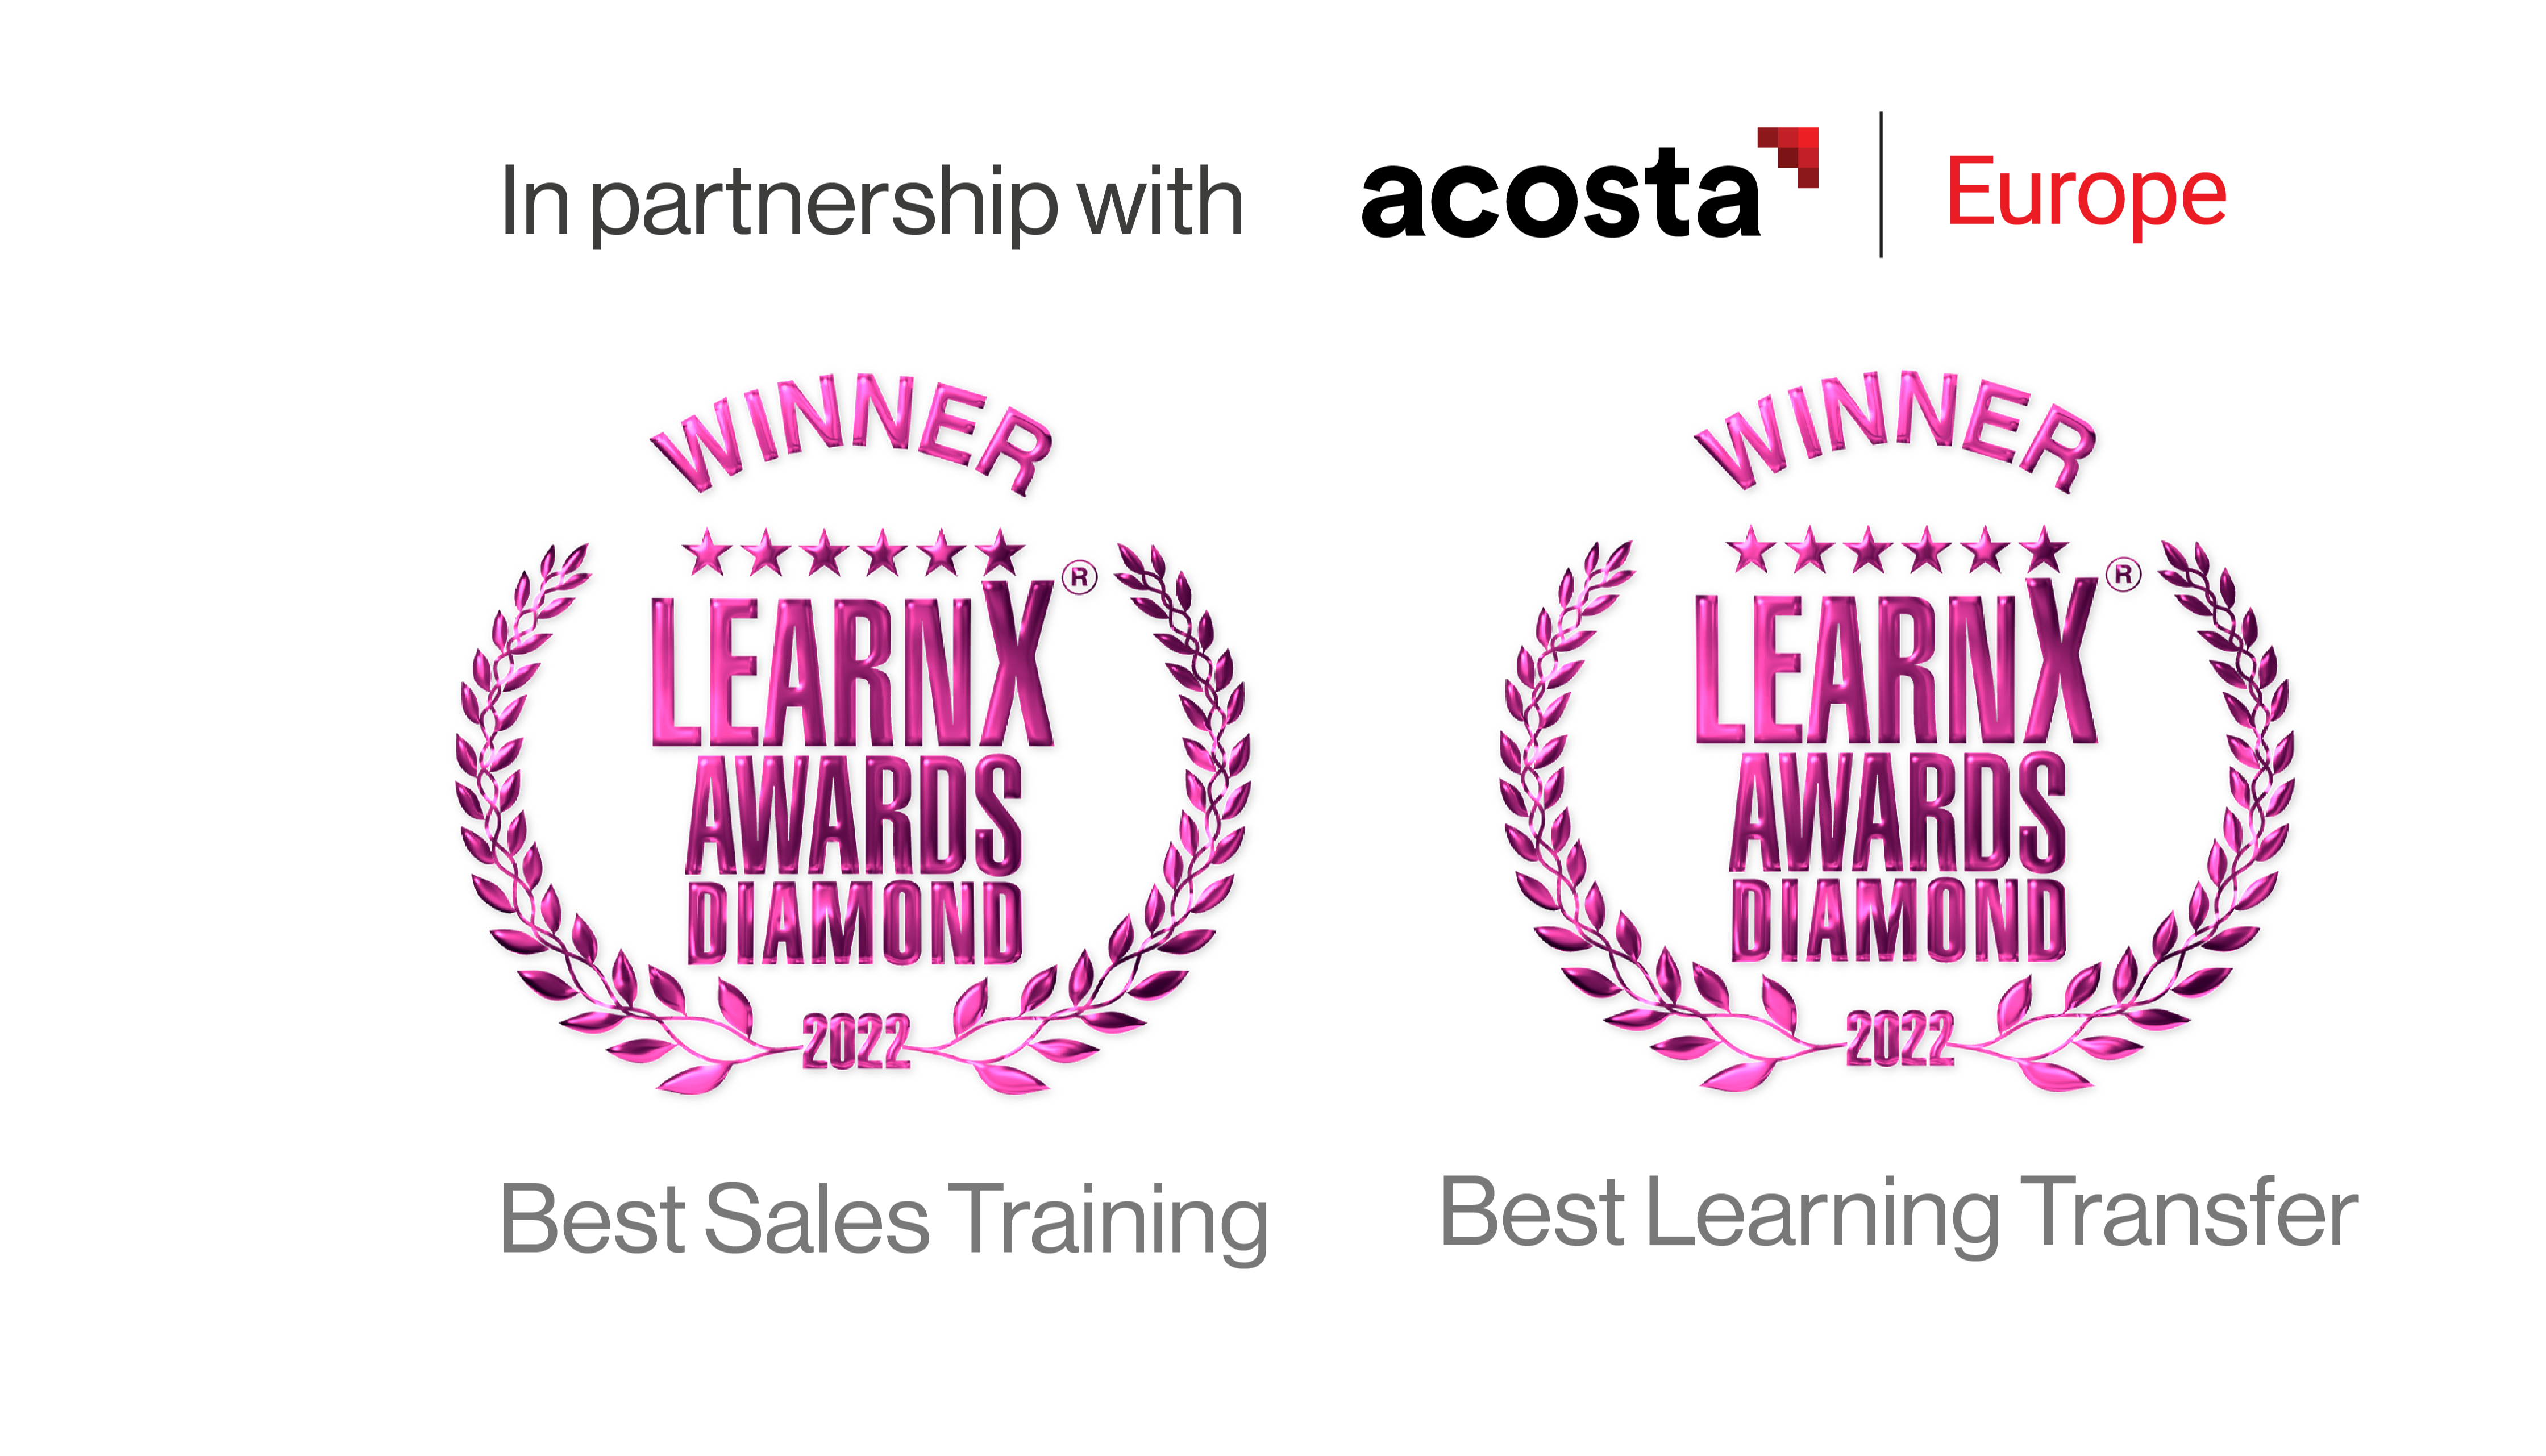 LearnX awards rosette